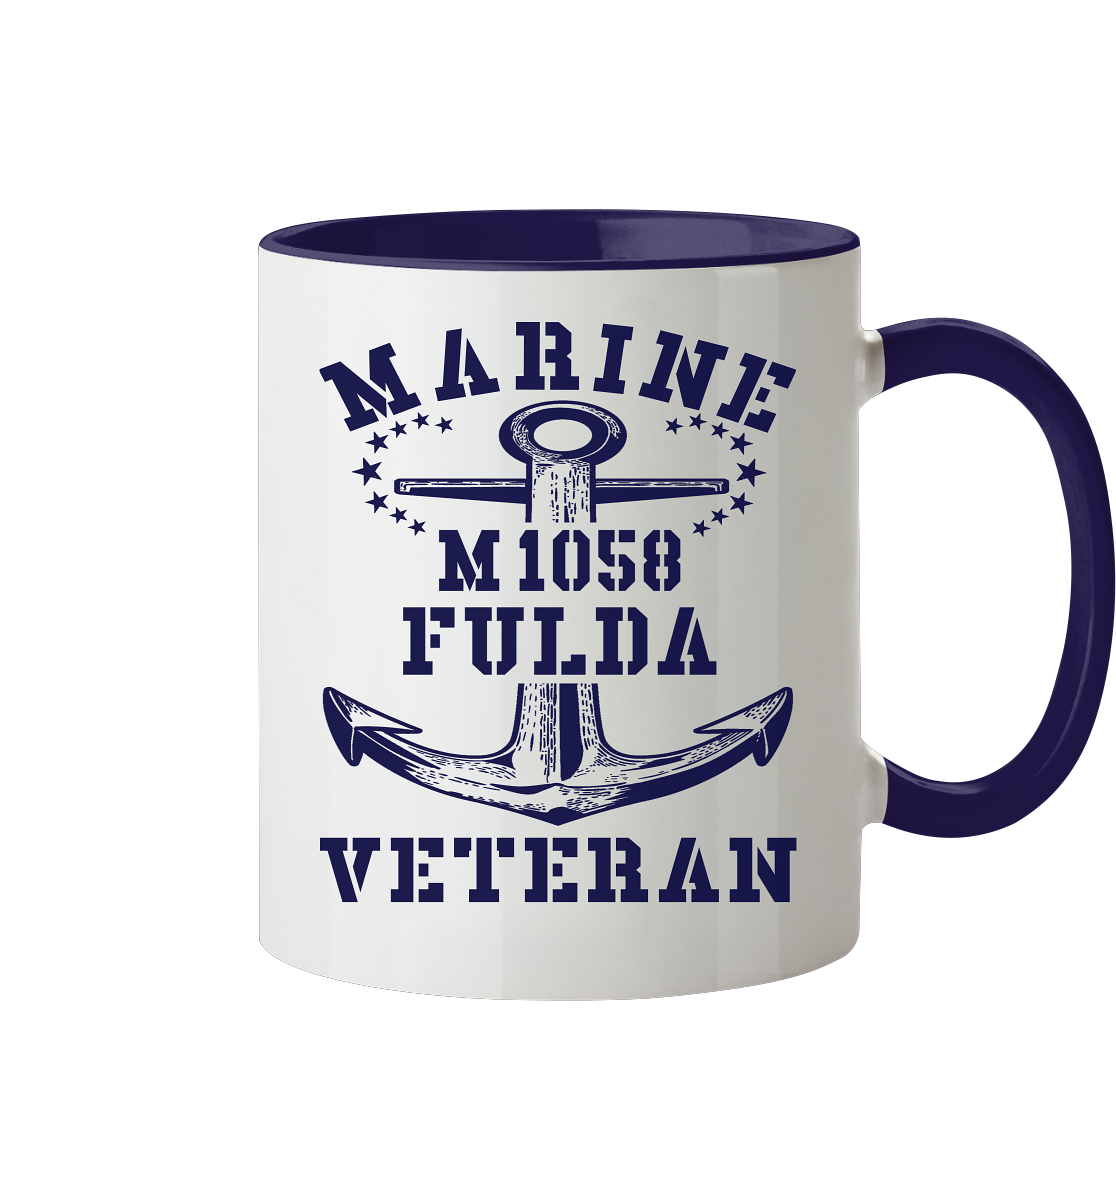 Mij.-Boot M1058 FULDA Marine Veteran - Tasse zweifarbig